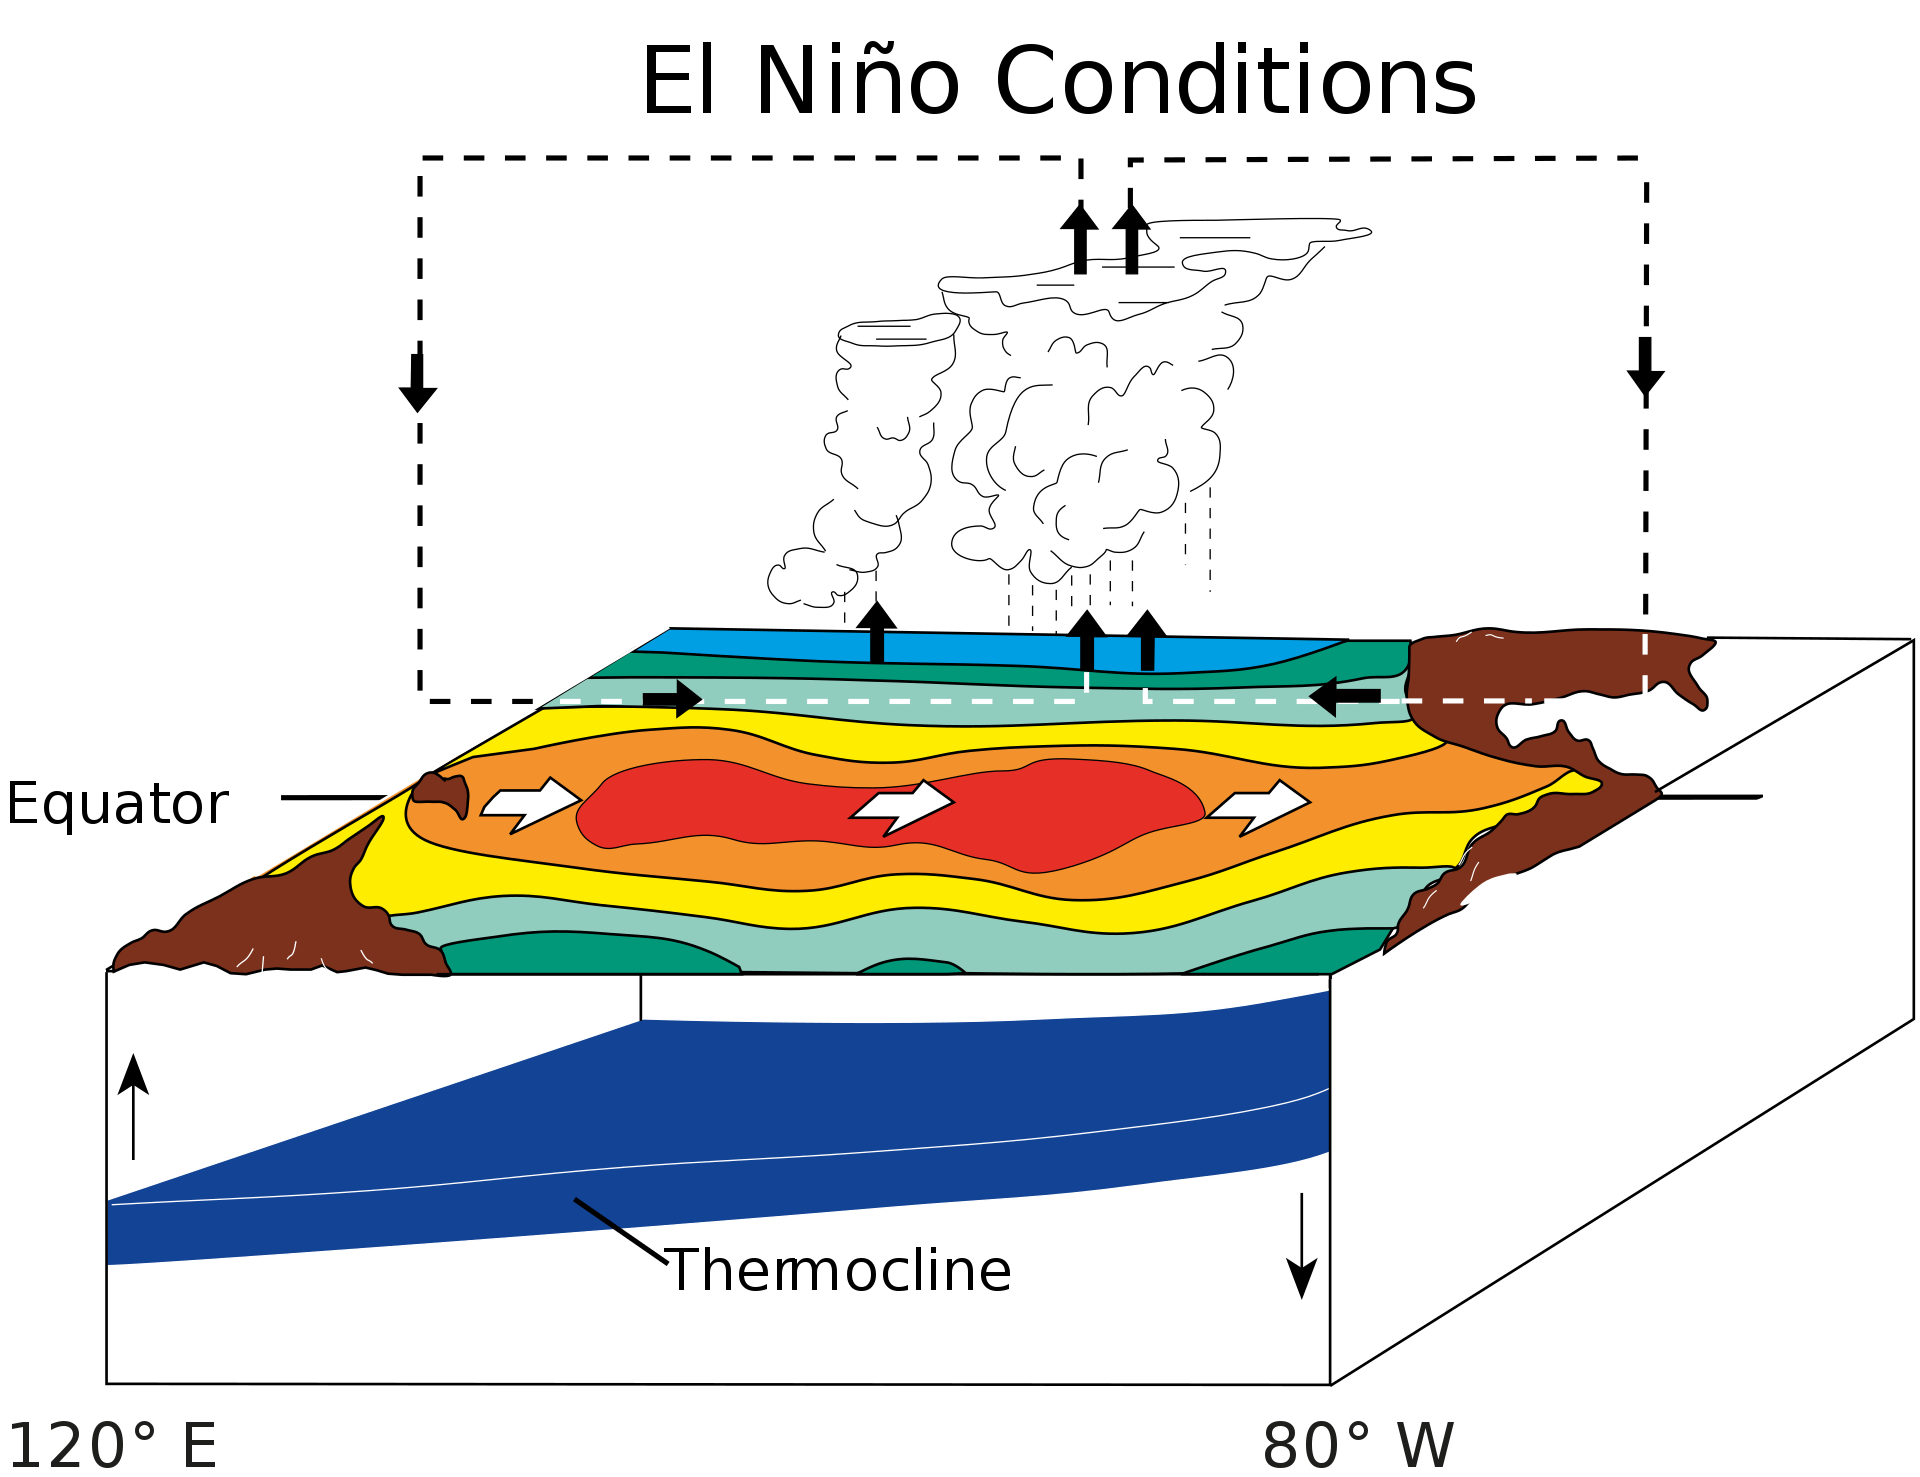 Условия образования Эль-Ниньо: массив тёплой воды движется к южноамериканскому побережью. Отсутствие поднимающихся с глубины холодных вод усиливает потепление. Инфографика © Wikipedia / Fred the Oyster